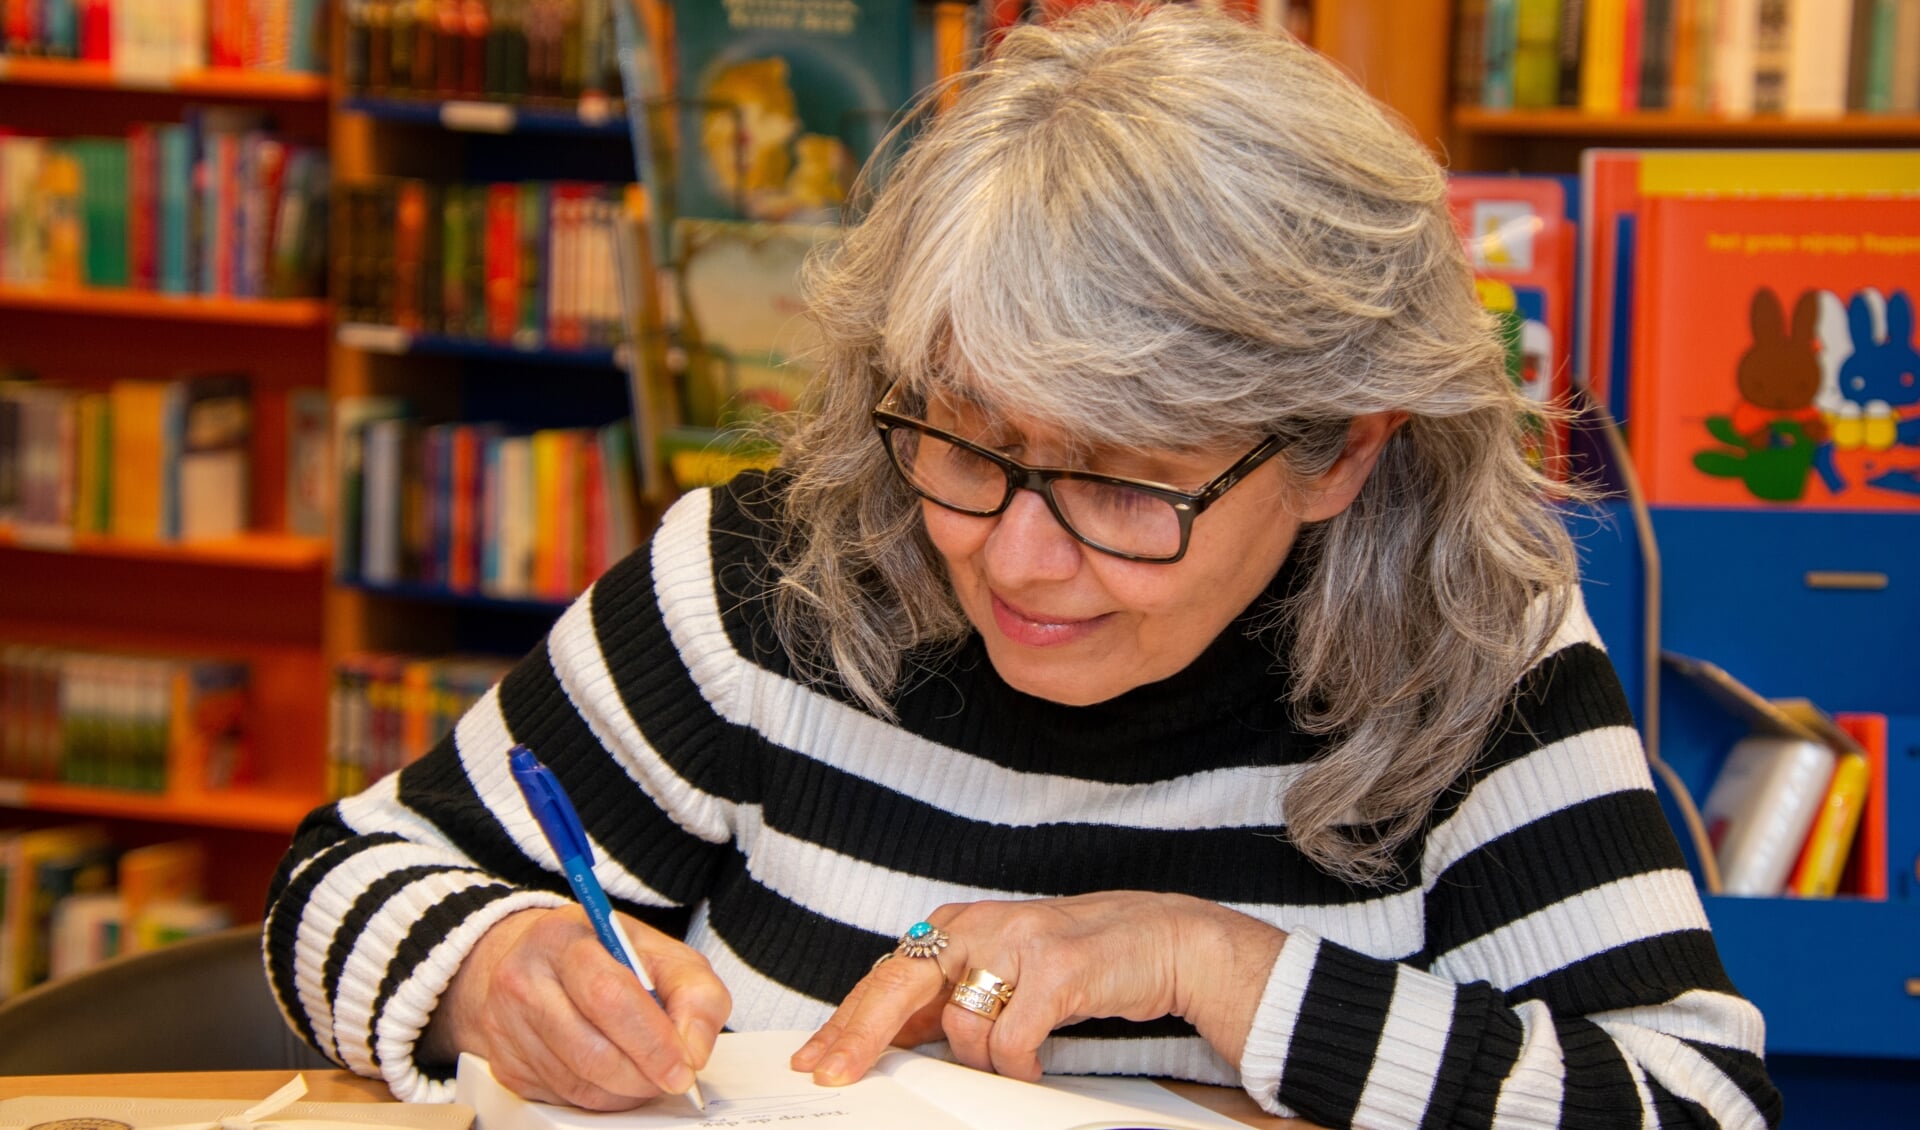 Mardjan signeert haar boek. Foto: Marion Verhaaf